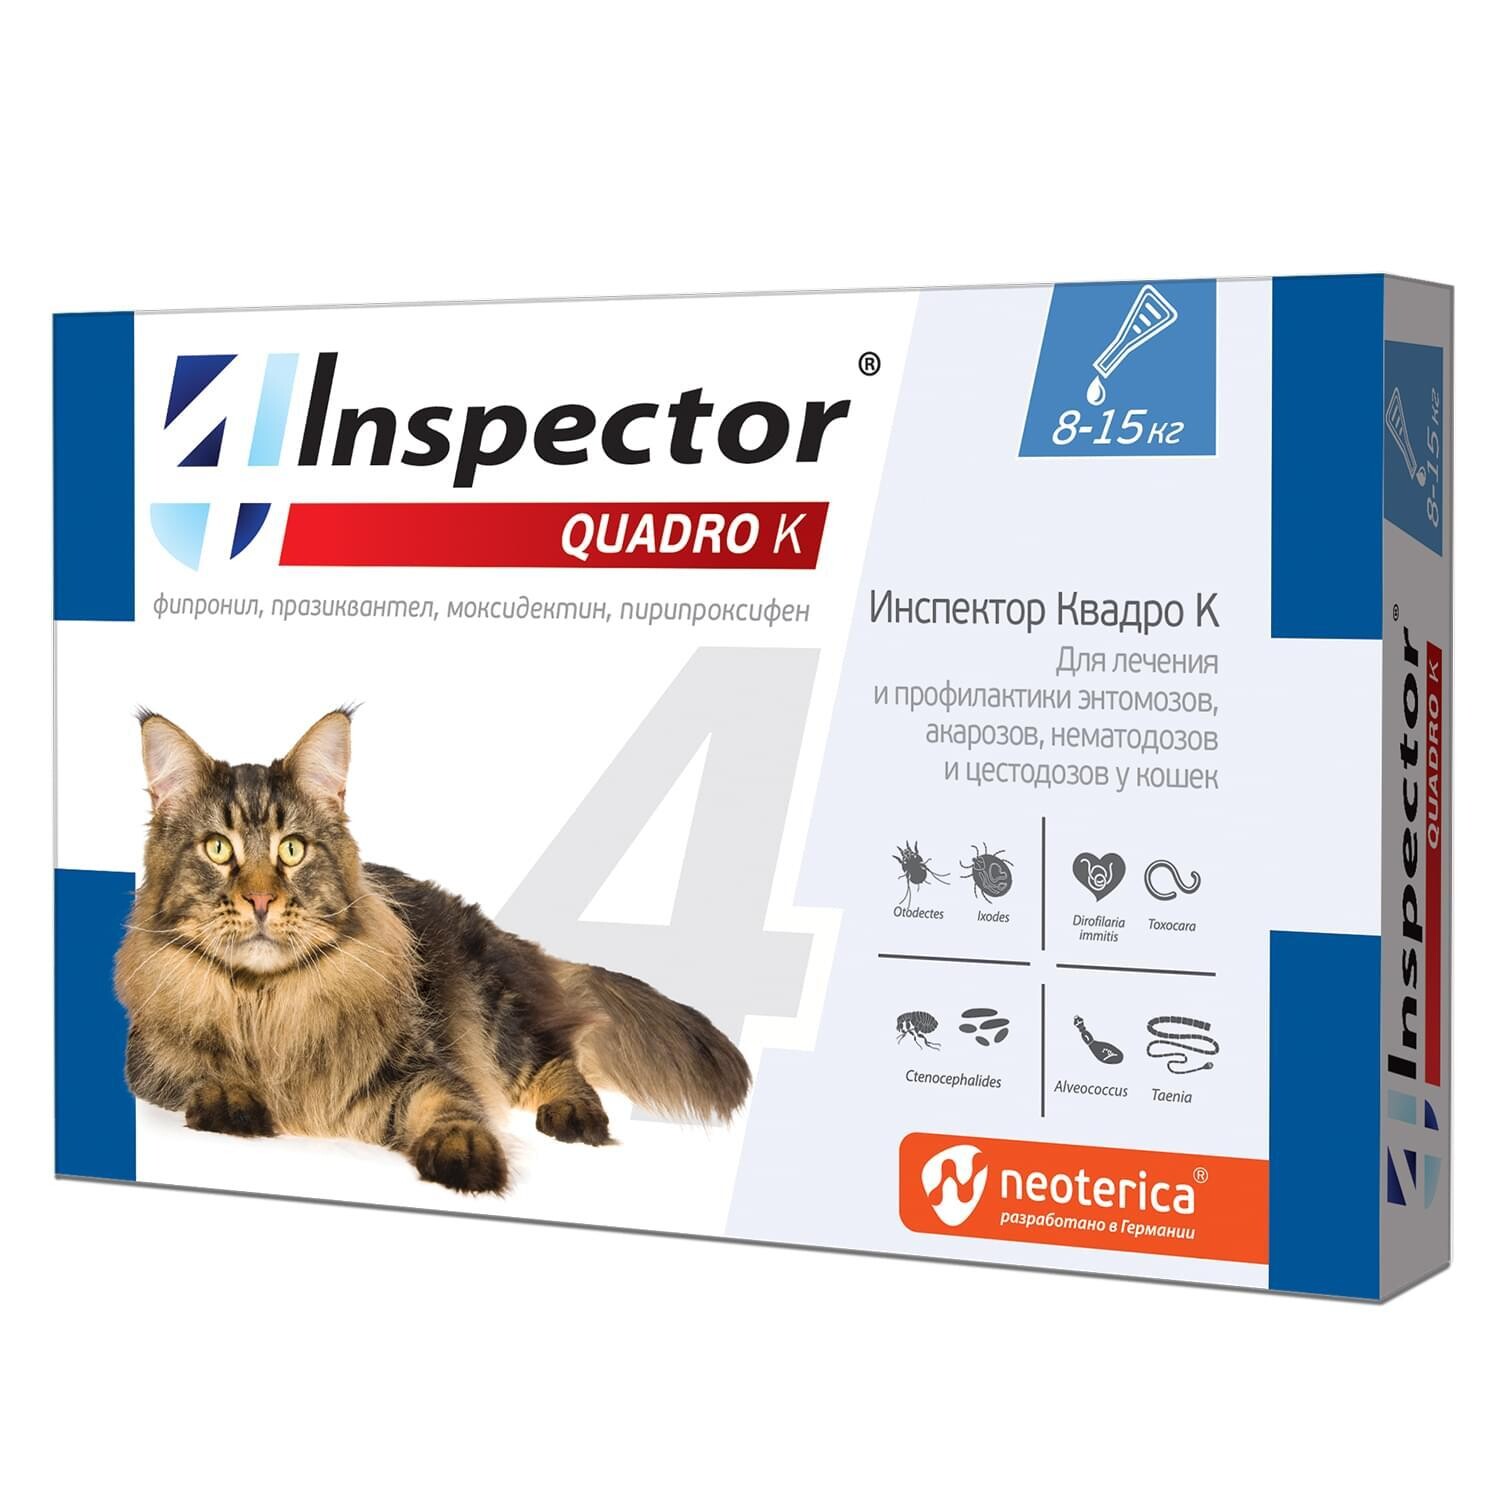 Inspector Quadro капли от внутренних и внешних паразитов для кошек 8-15 кг